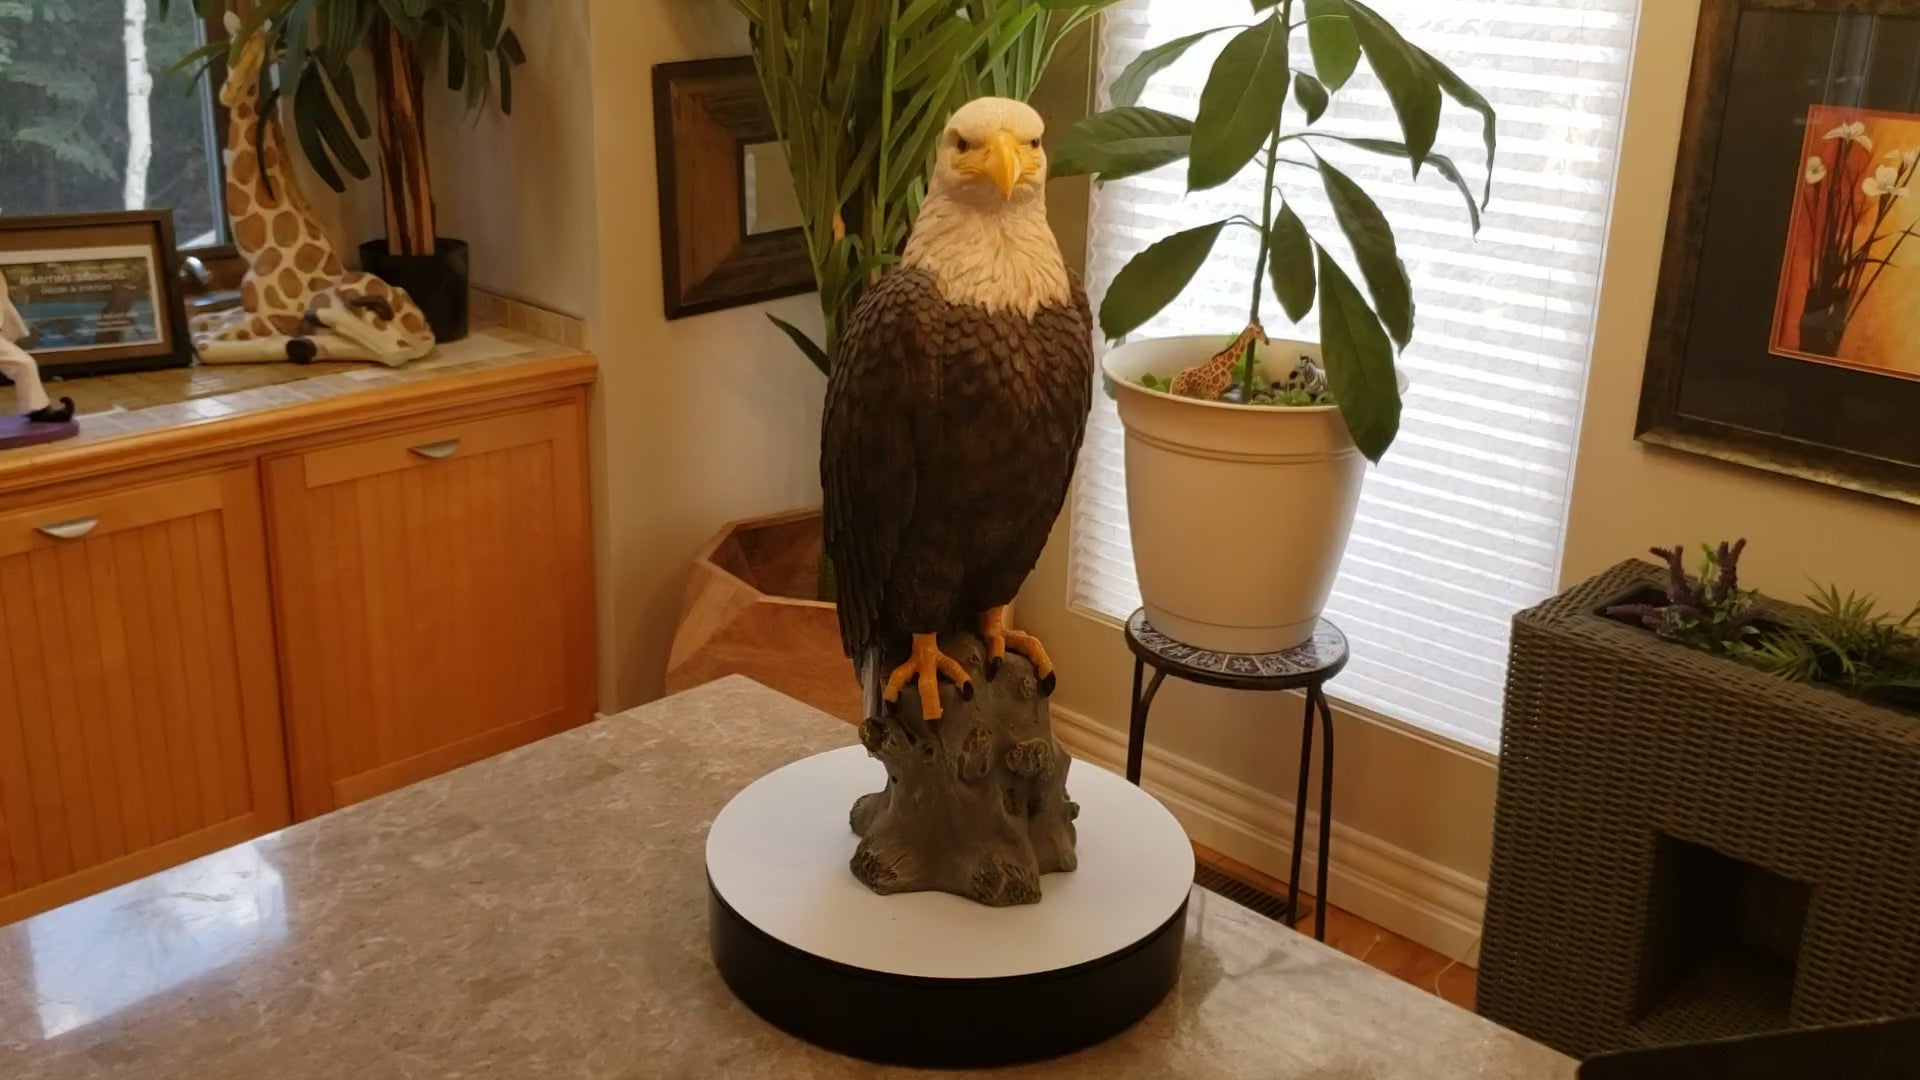 Auction for sale bald eagle statue